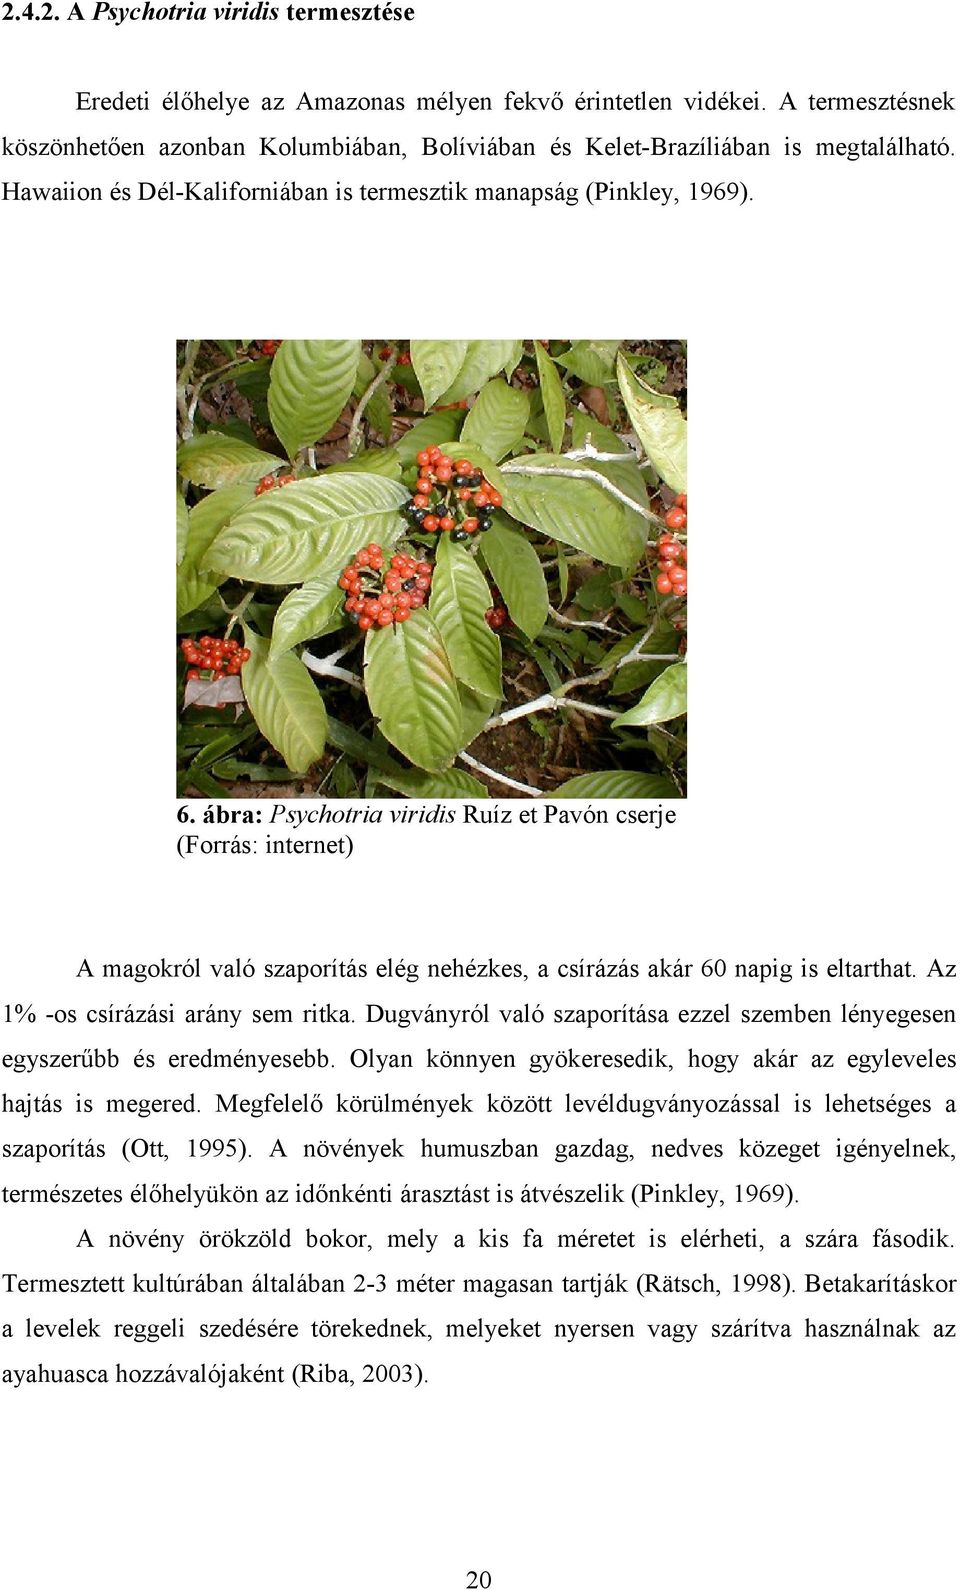 ábra: Psychotria viridis Ruíz et Pavón cserje (Forrás: internet) A magokról való szaporítás elég nehézkes, a csírázás akár 60 napig is eltarthat. Az 1% -os csírázási arány sem ritka.